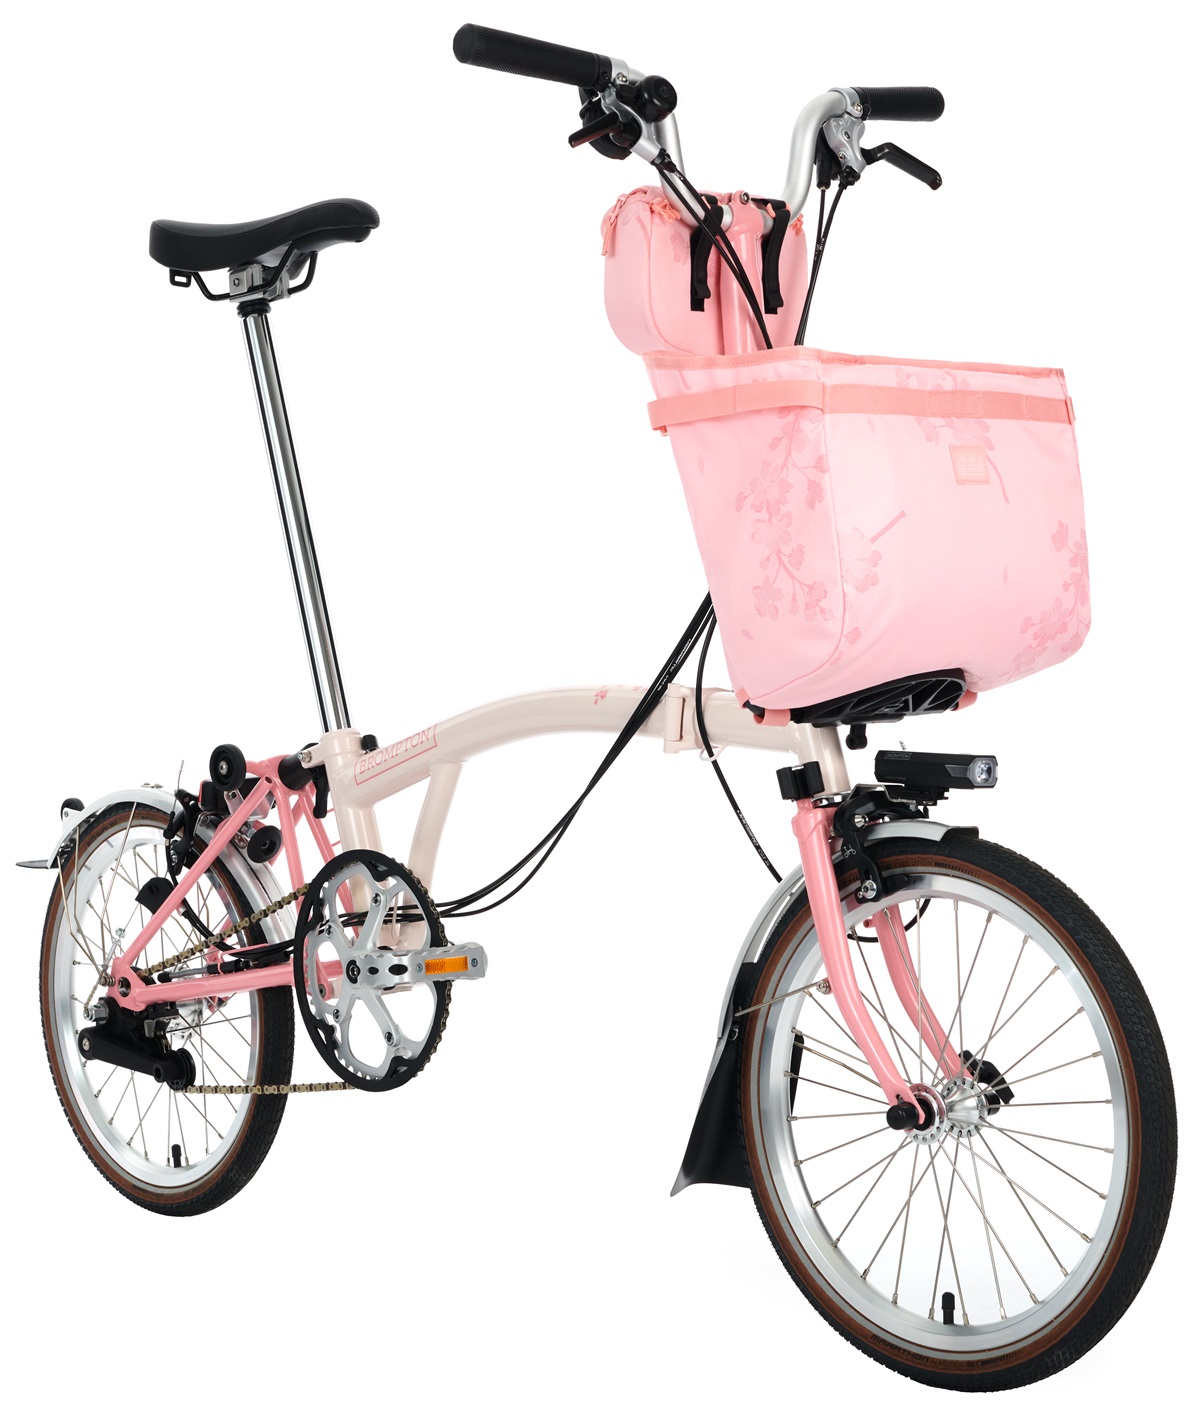 【新橋×BROMPTON】春の訪れを感じる限定カラー 『M6L Cherry Blossom』が入荷しました！ | 新橋 銀座 港区 中央区でスポーツ自転車をお探しならY